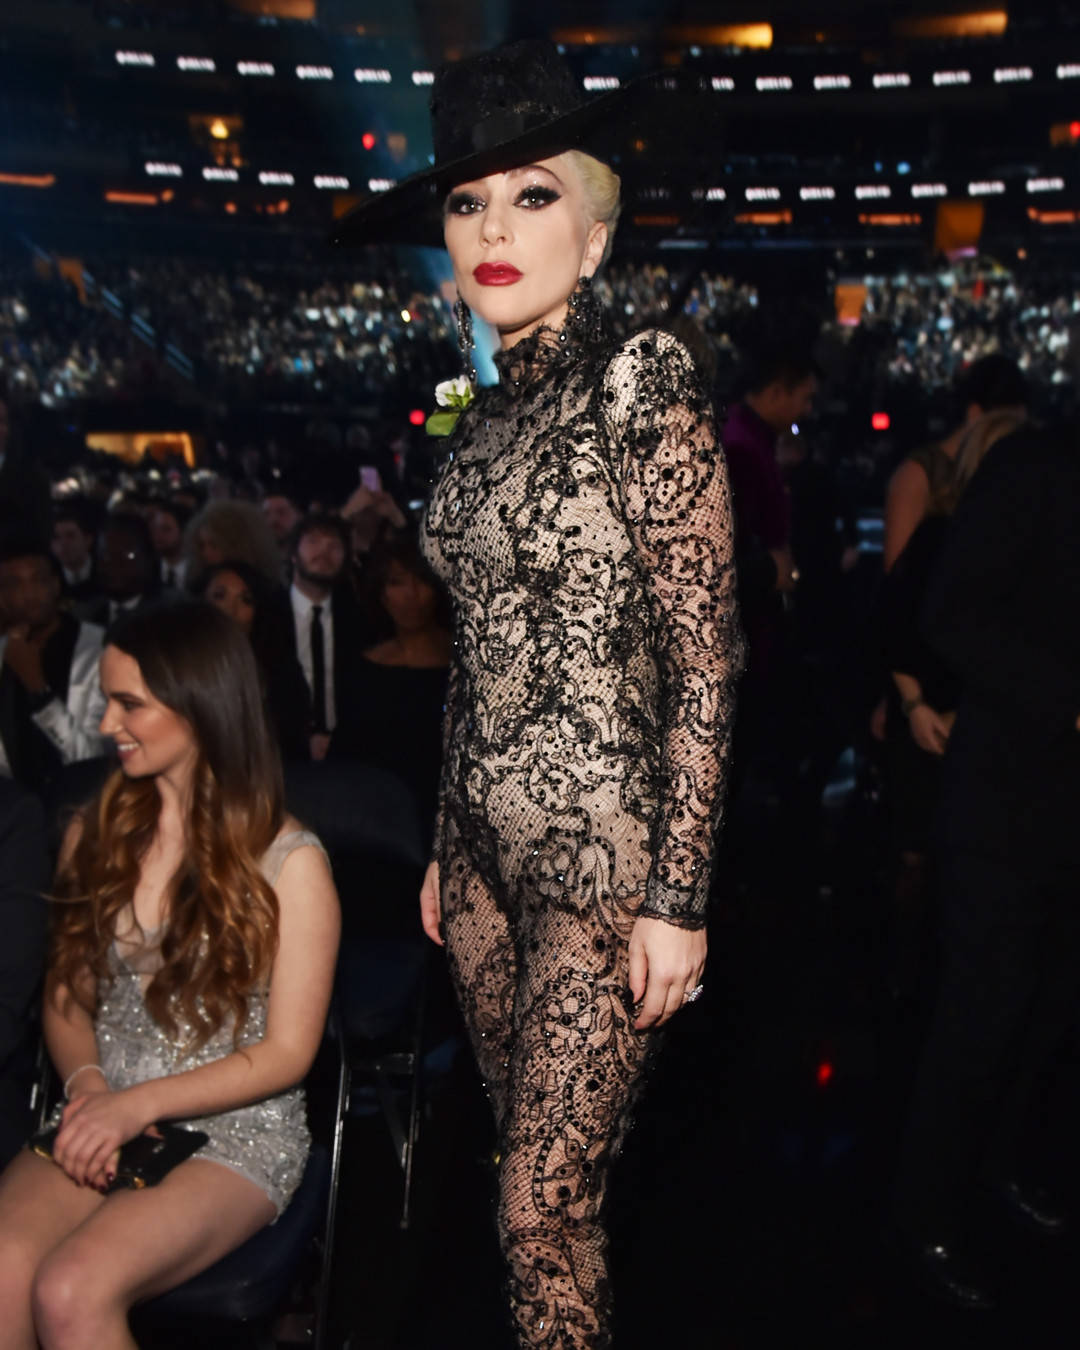 rs_1080x1350-180128184820-1080x1350-Lady-Gaga-Grammy-Awards-Body-Suit